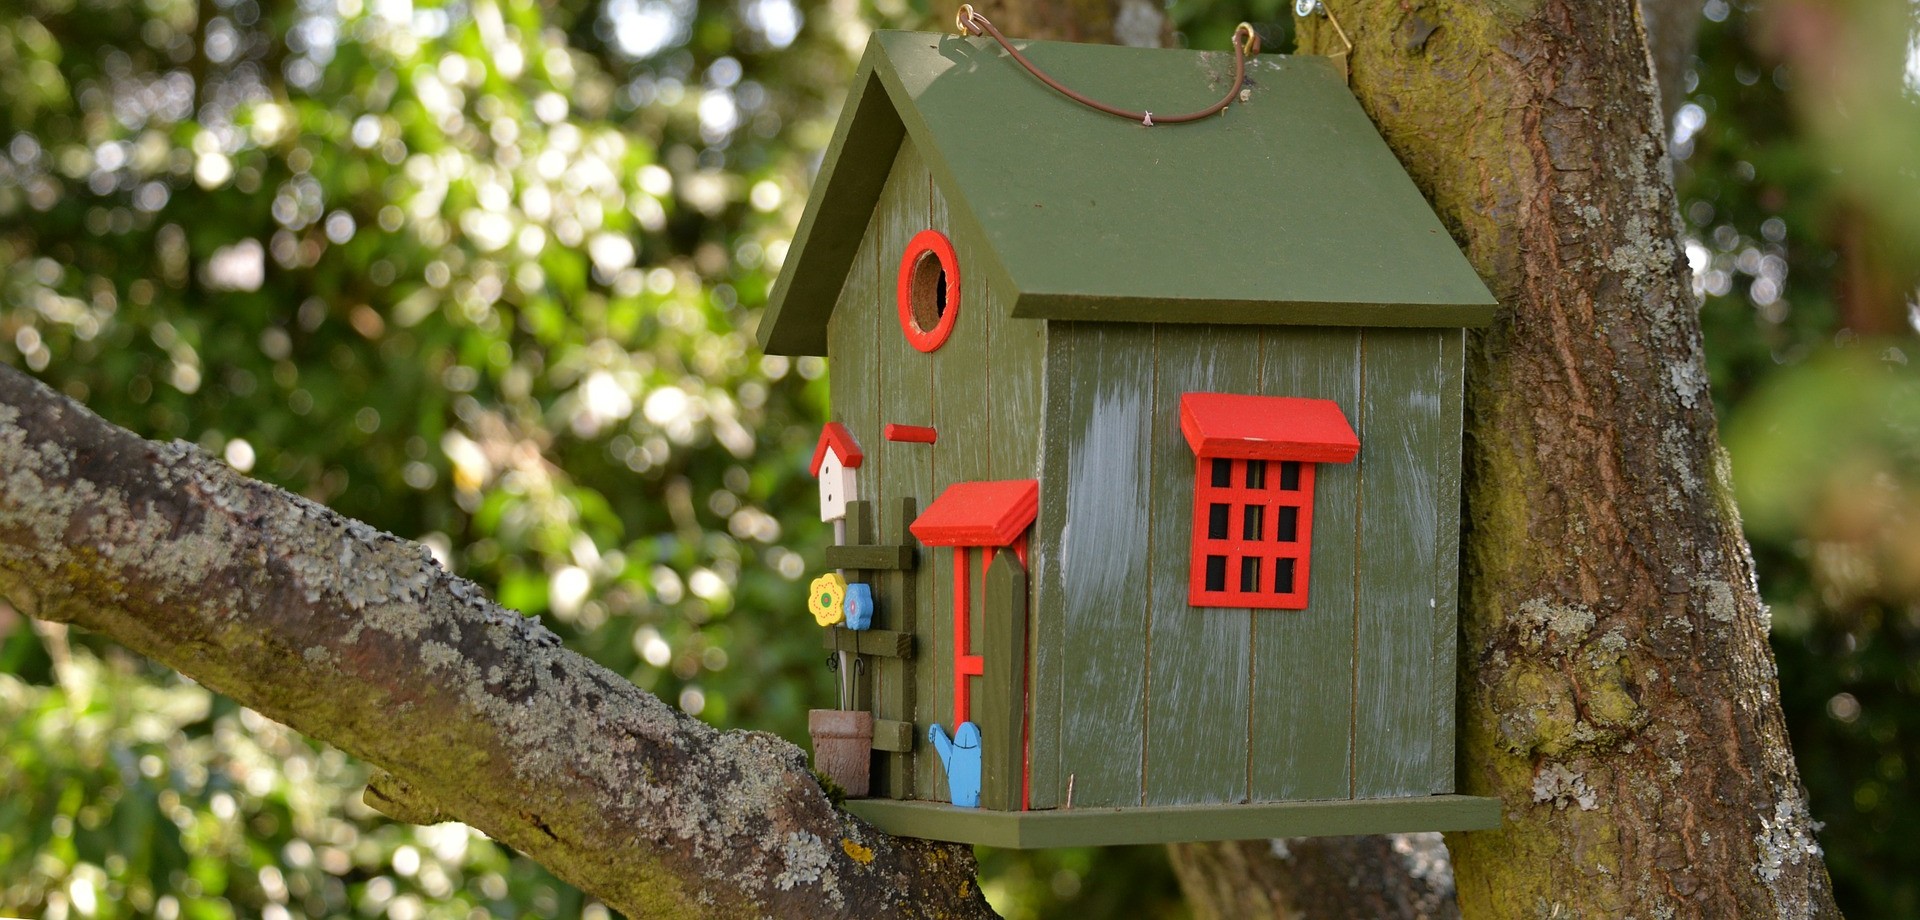 In Großaufnahme wird ein grünes Vogelhäuschen mit roten Fenstern gezeigt, davor steht eine blaue Miniatur-Gießkanne und kleine Miniatur-Blumen